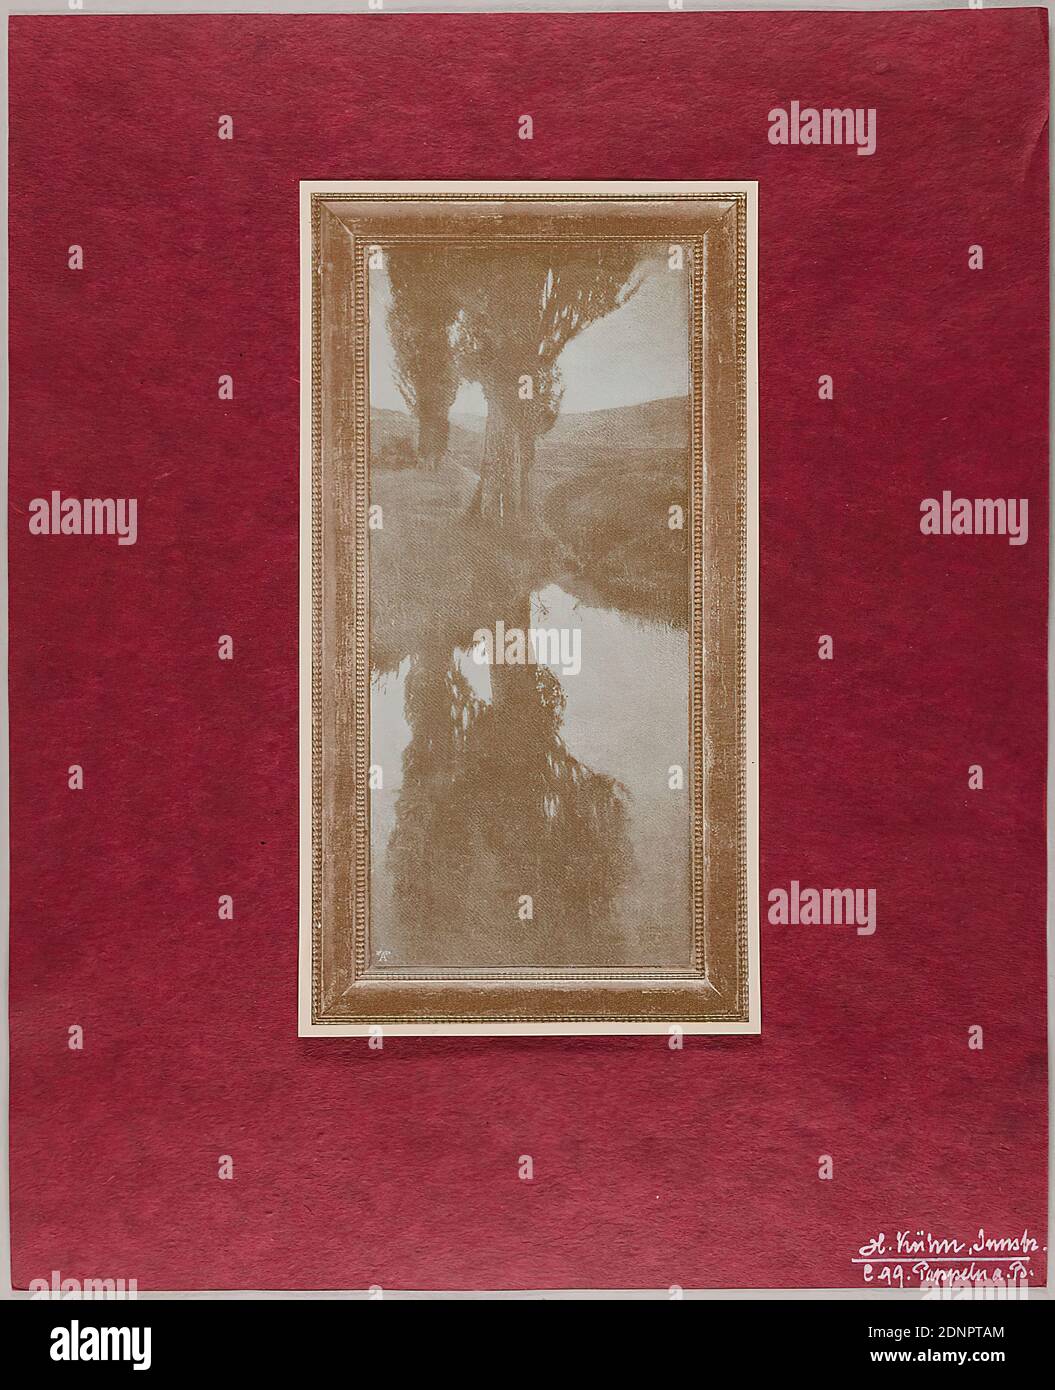 Heinrich Kühn, Pappeln B, carta, autotype, stampa duplex (duotone), dimensione immagine: Altezza: 20.50 cm; larghezza: 10.70 cm, inscritto: Nella forma di stampa: In basso a sinistra: Dr A Co, inscritto: Recto: In basso a destra sul supporto immagini (cartoncino rosso) in inchiostro bianco: H. Kühn. Innsbruck, c. 99. Pioppi B, sul retro del contenitore di cartone n. e n. scatola, nonché indicazione stampata o scritta a mano dell'eh. Posizione (cabinet/box), fotografia artistica, fotografia paesaggistica, idillio, scene rurali, scene arcadie, fiume, alberi, arbusti Foto Stock